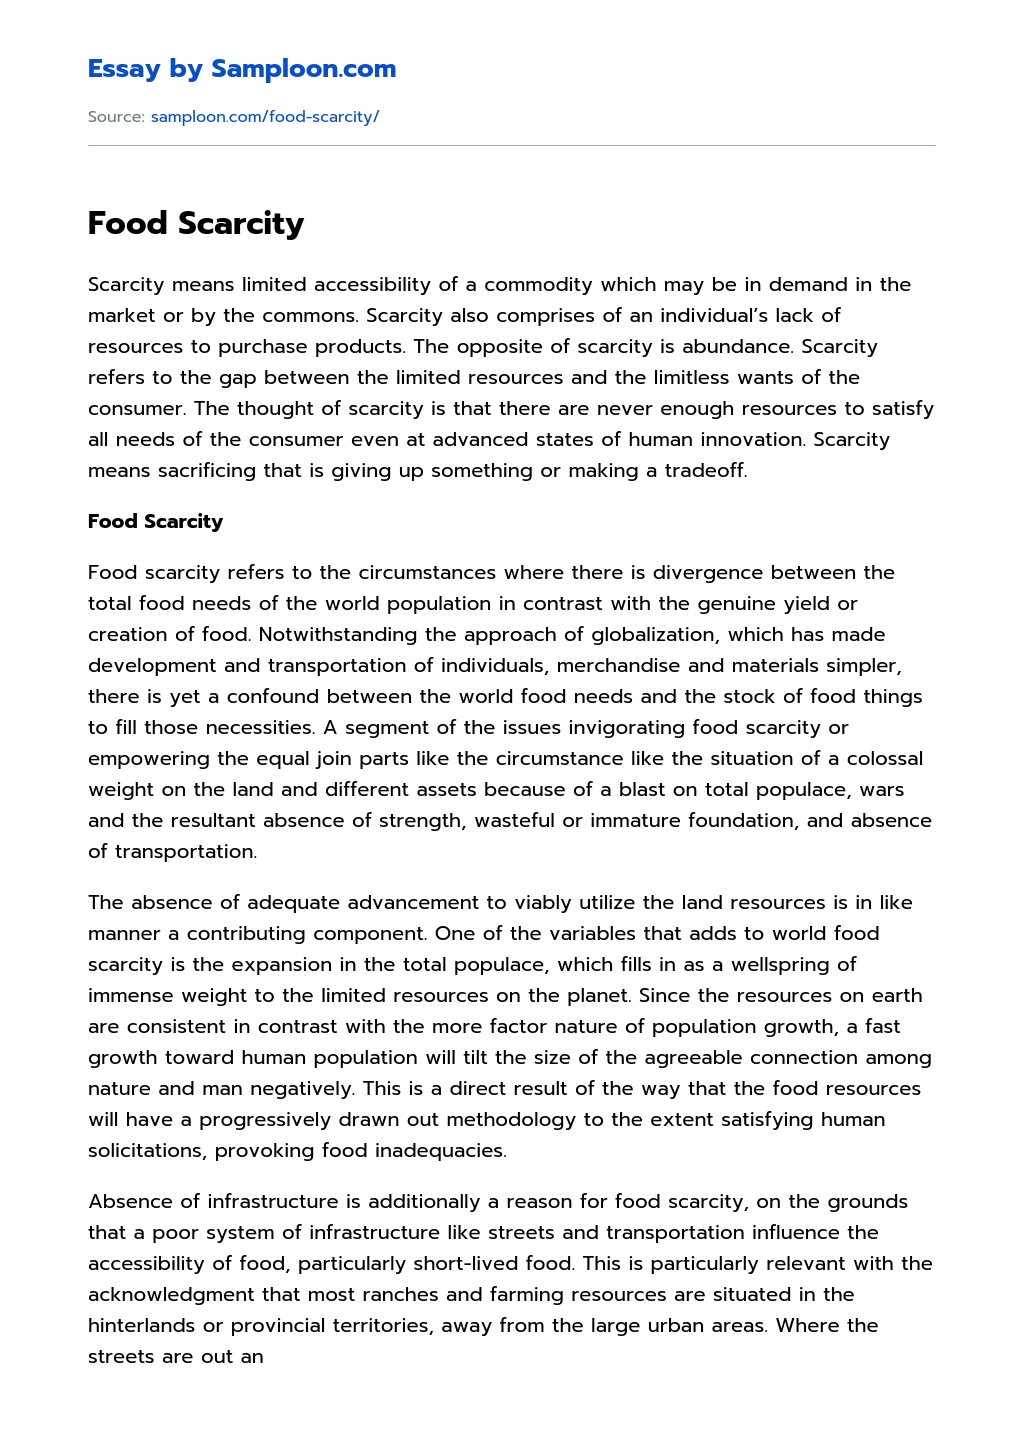 Food Scarcity essay